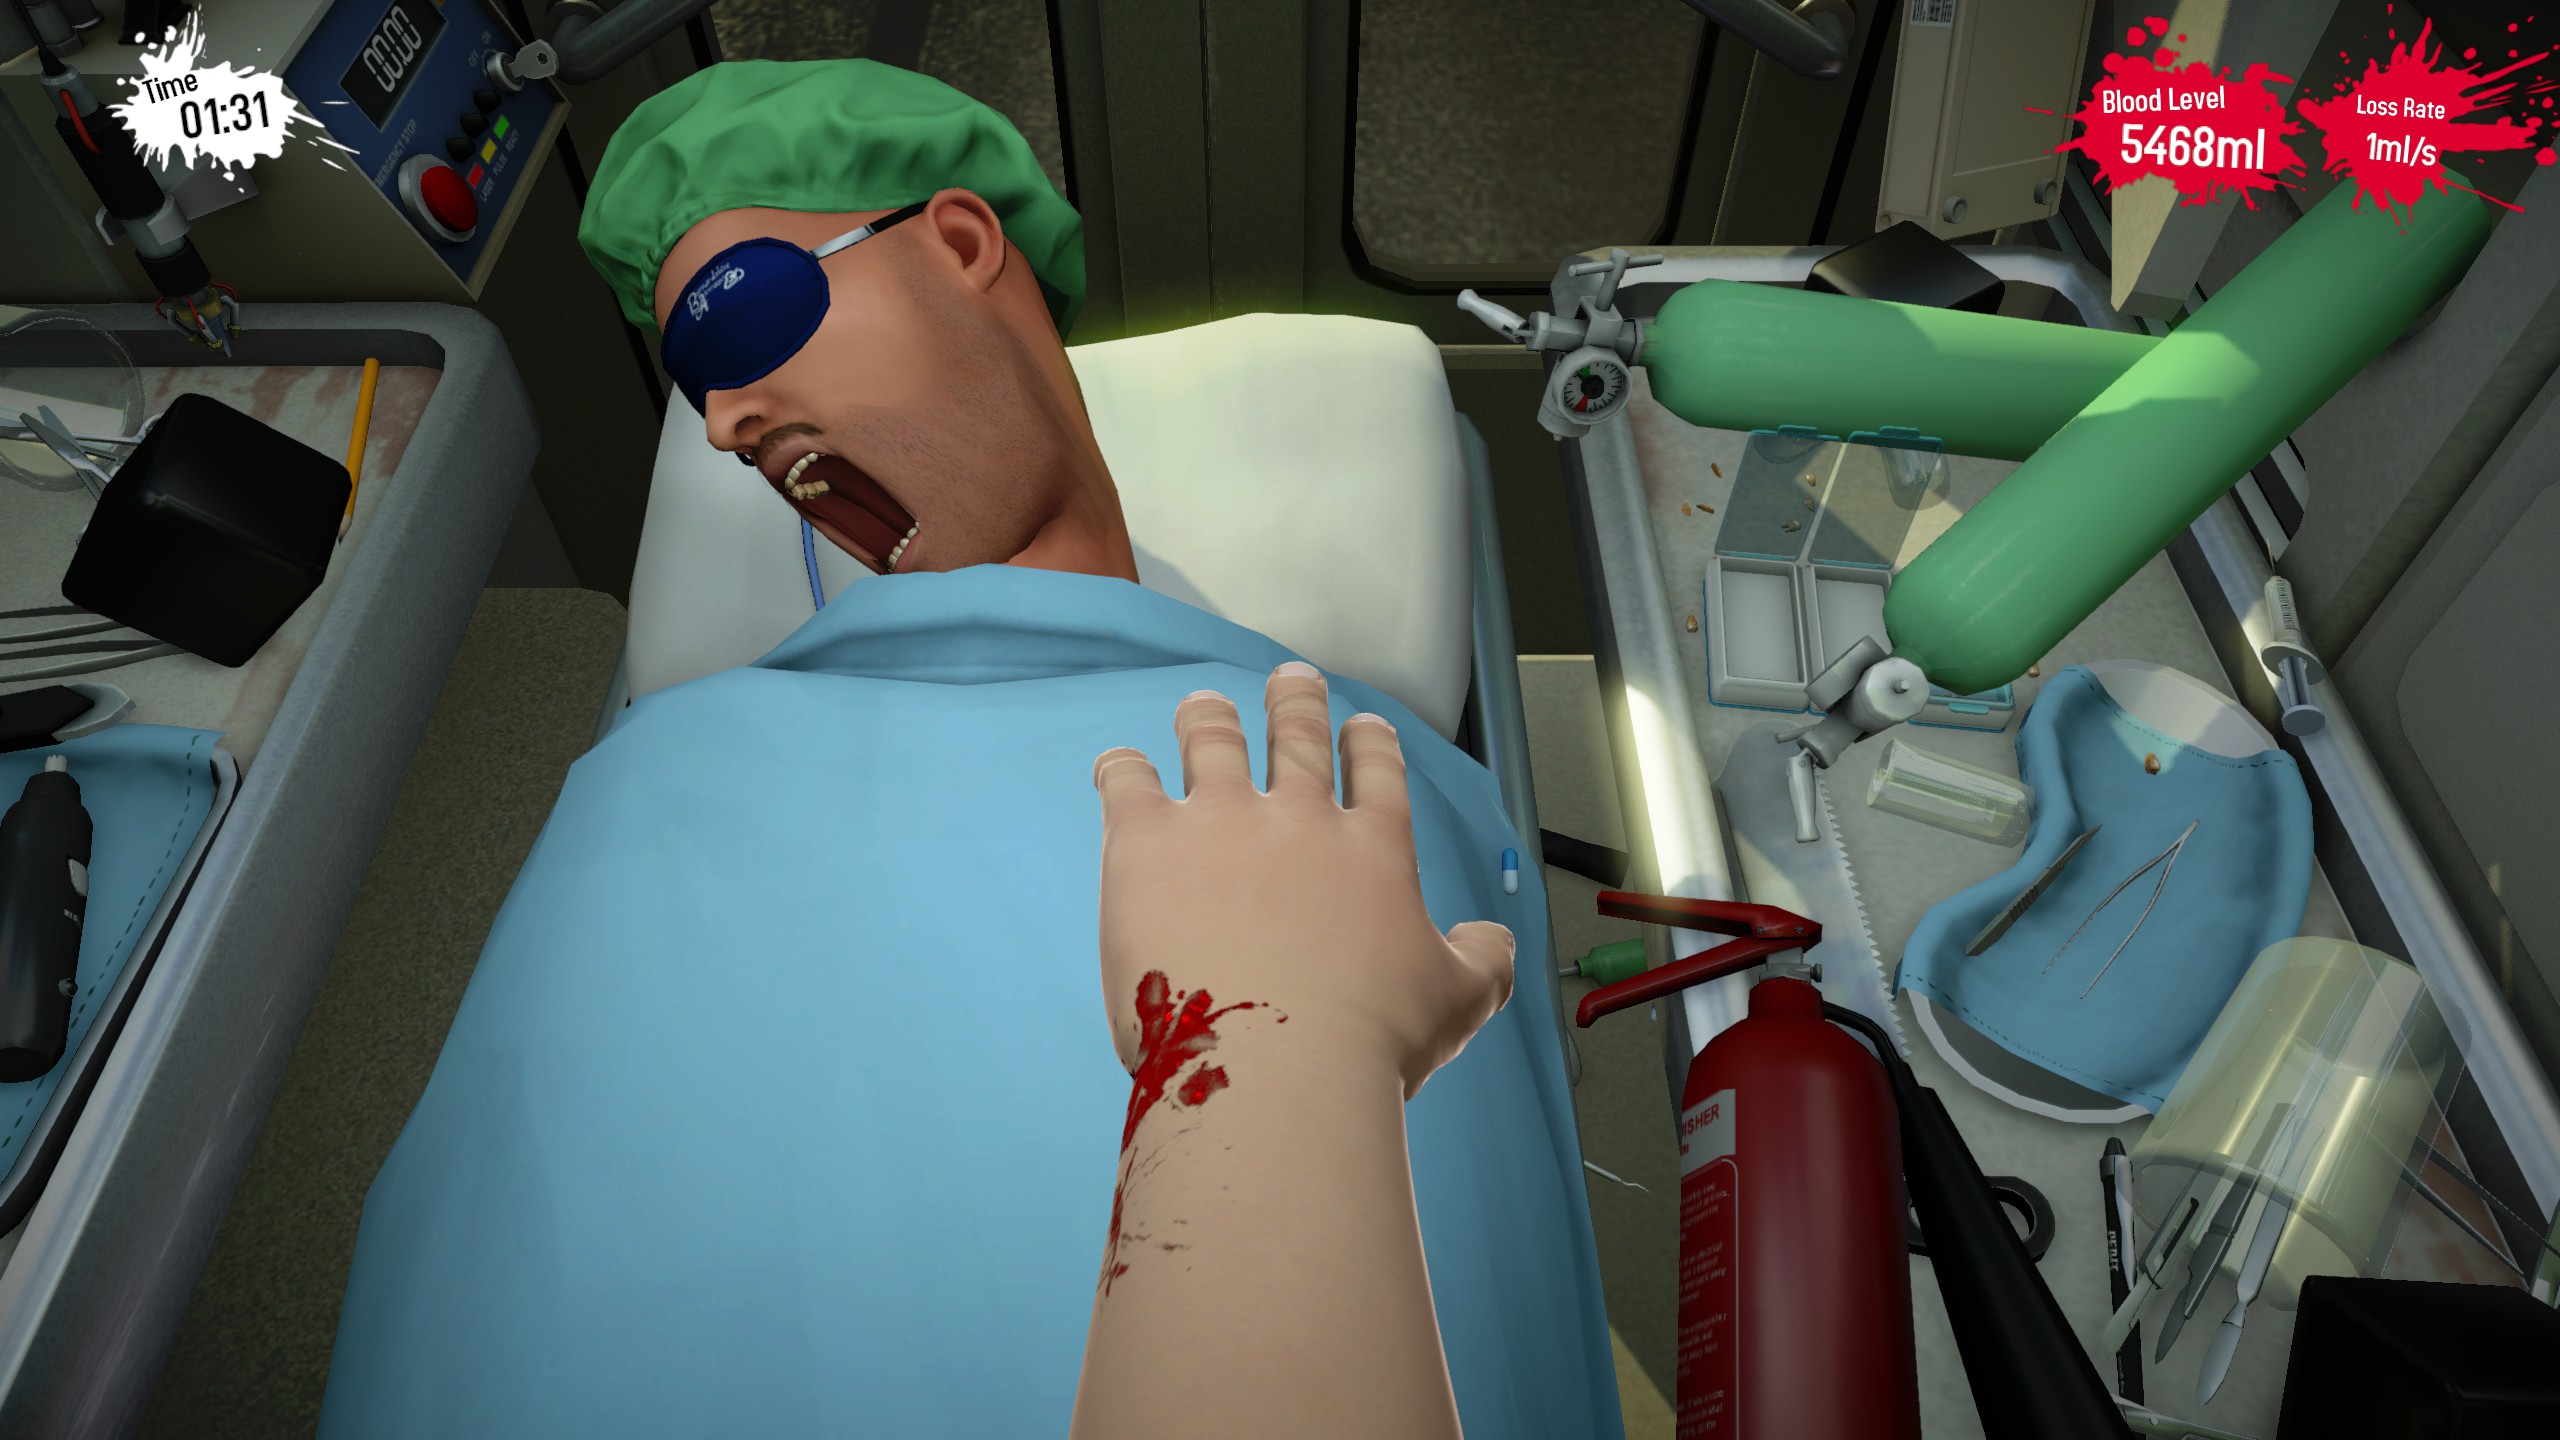 surgeon simulator 2 multiplayer not working